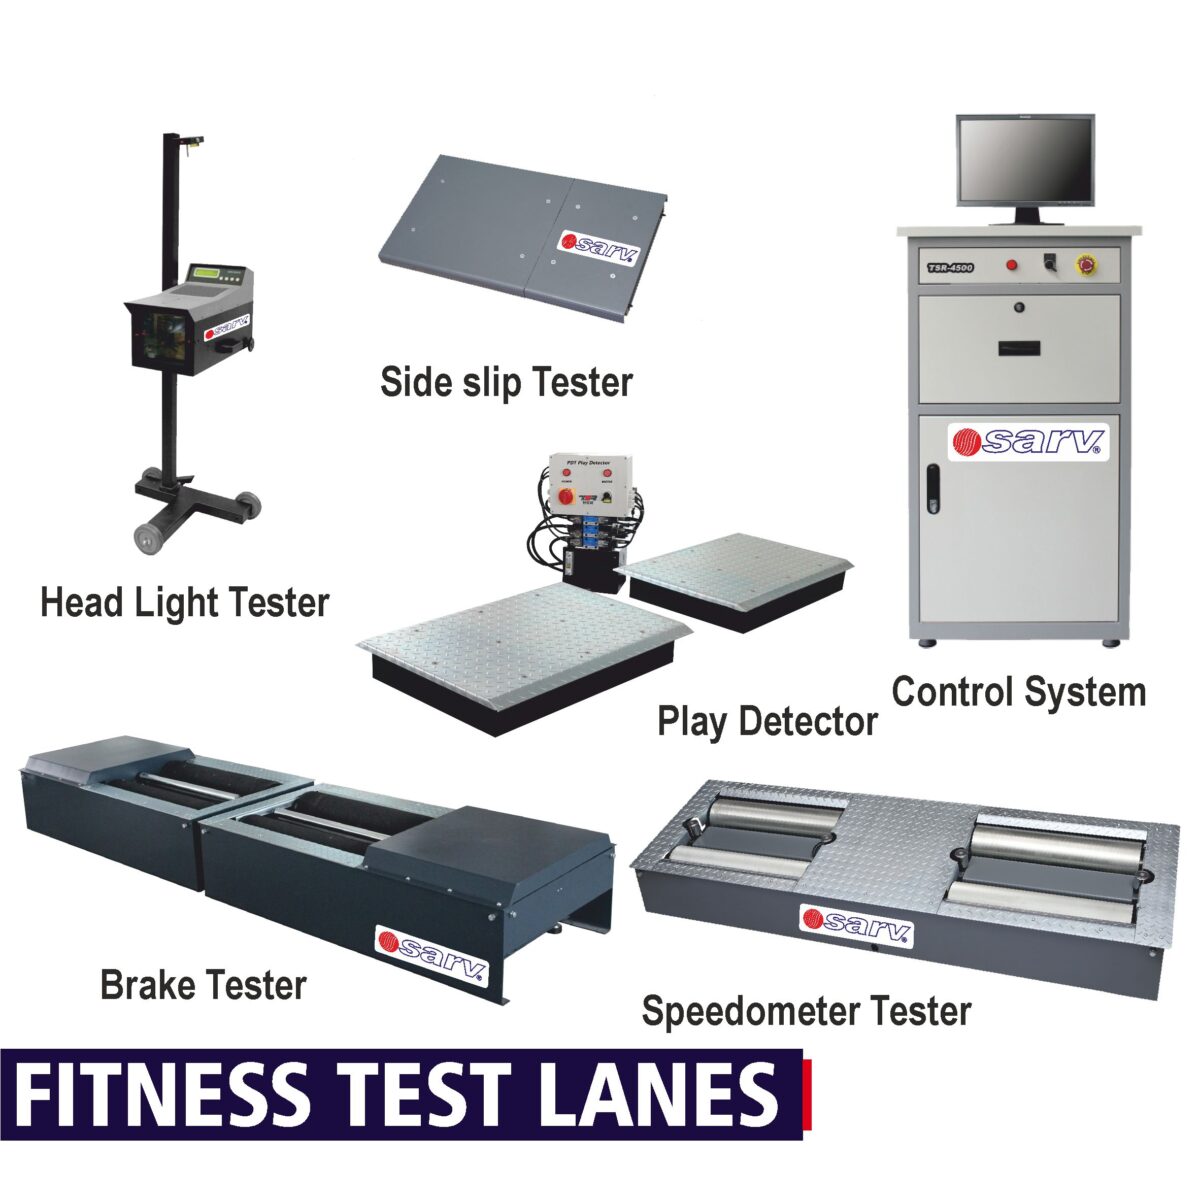 Fitness Test Lanes for buses & trucks